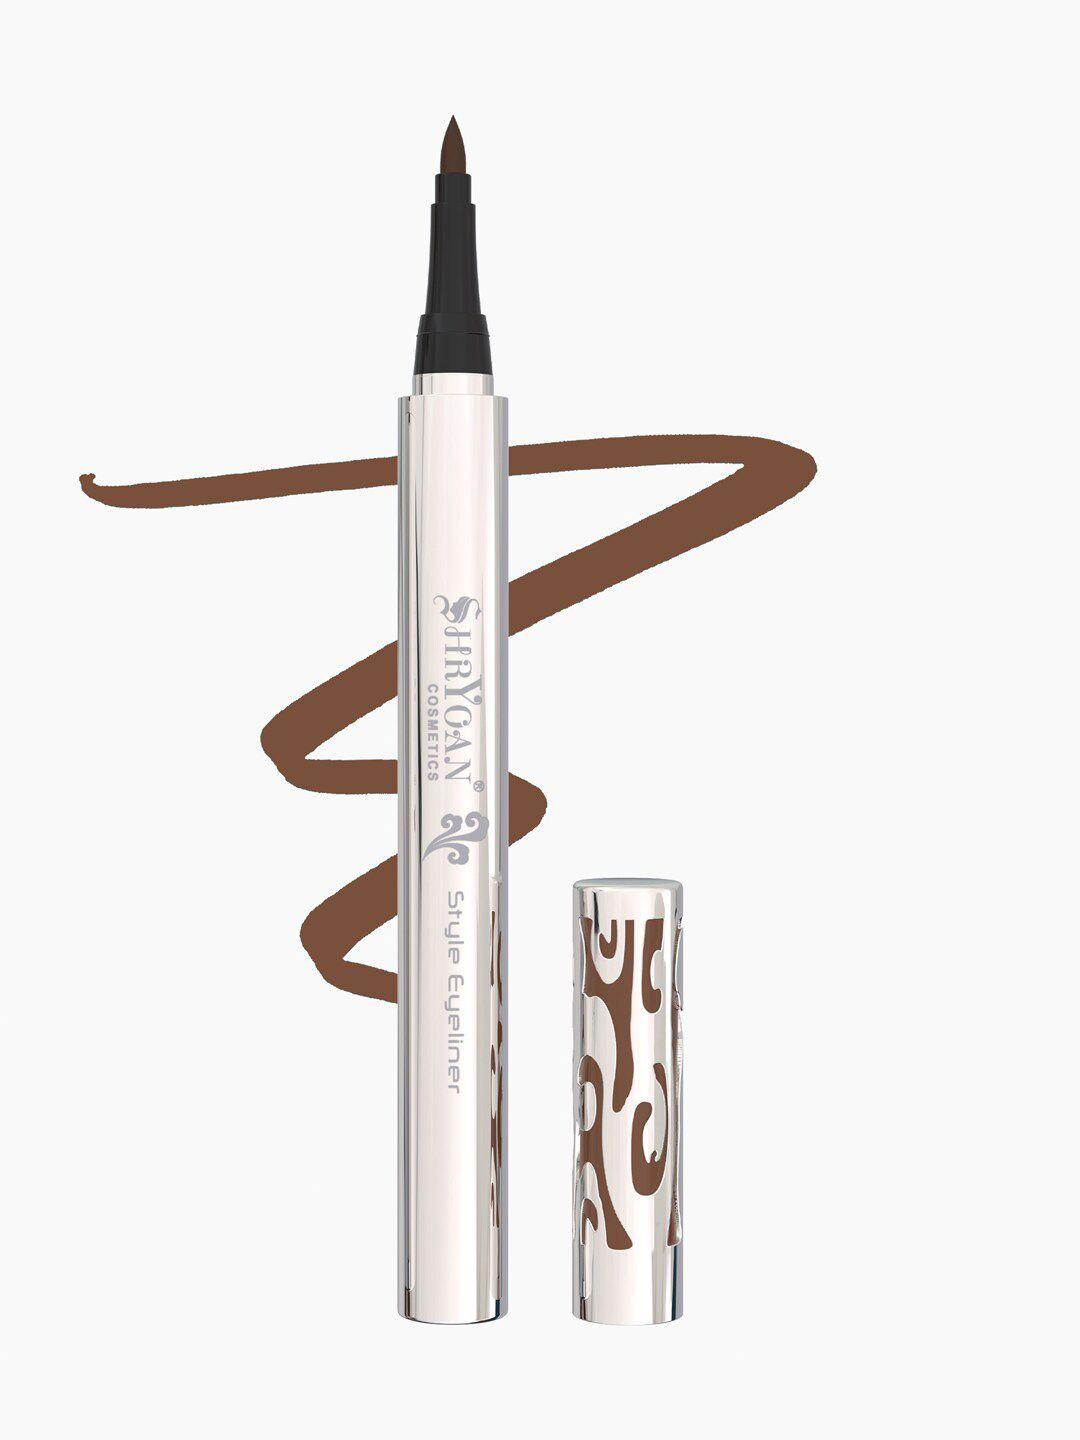 shryoan style long lasting eyeliner pen - 1.25g - brown